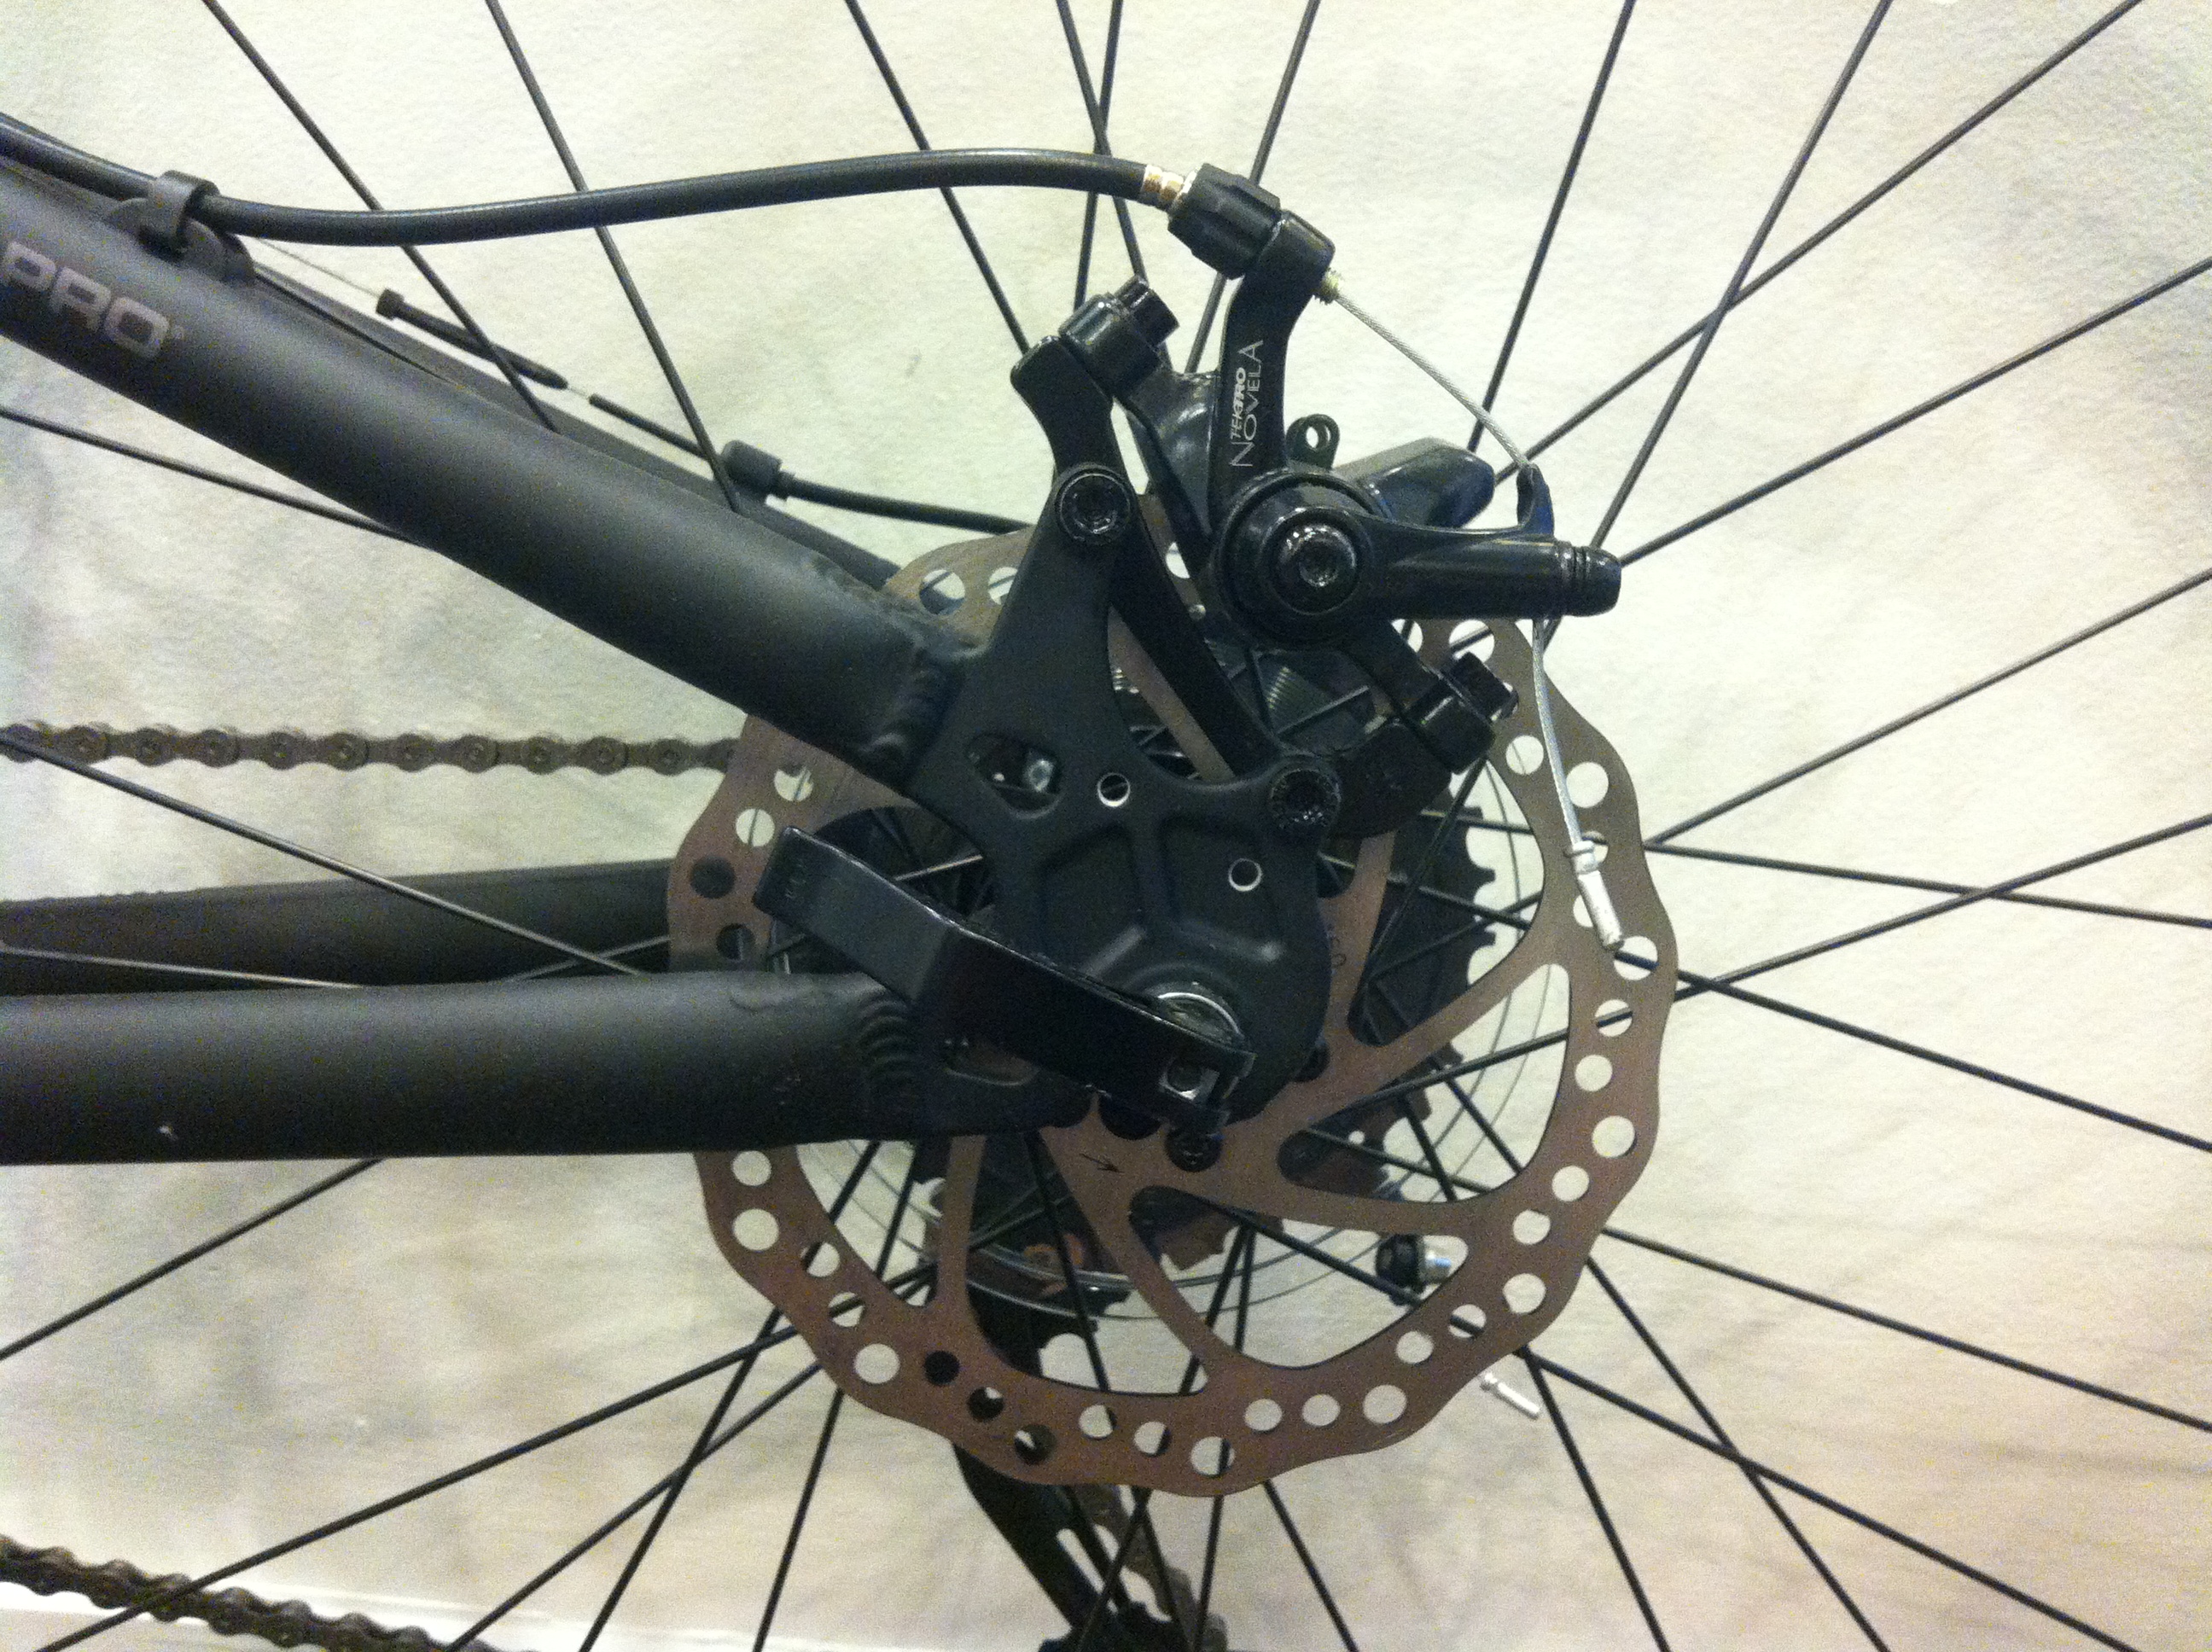 disc brakes on mountain bike